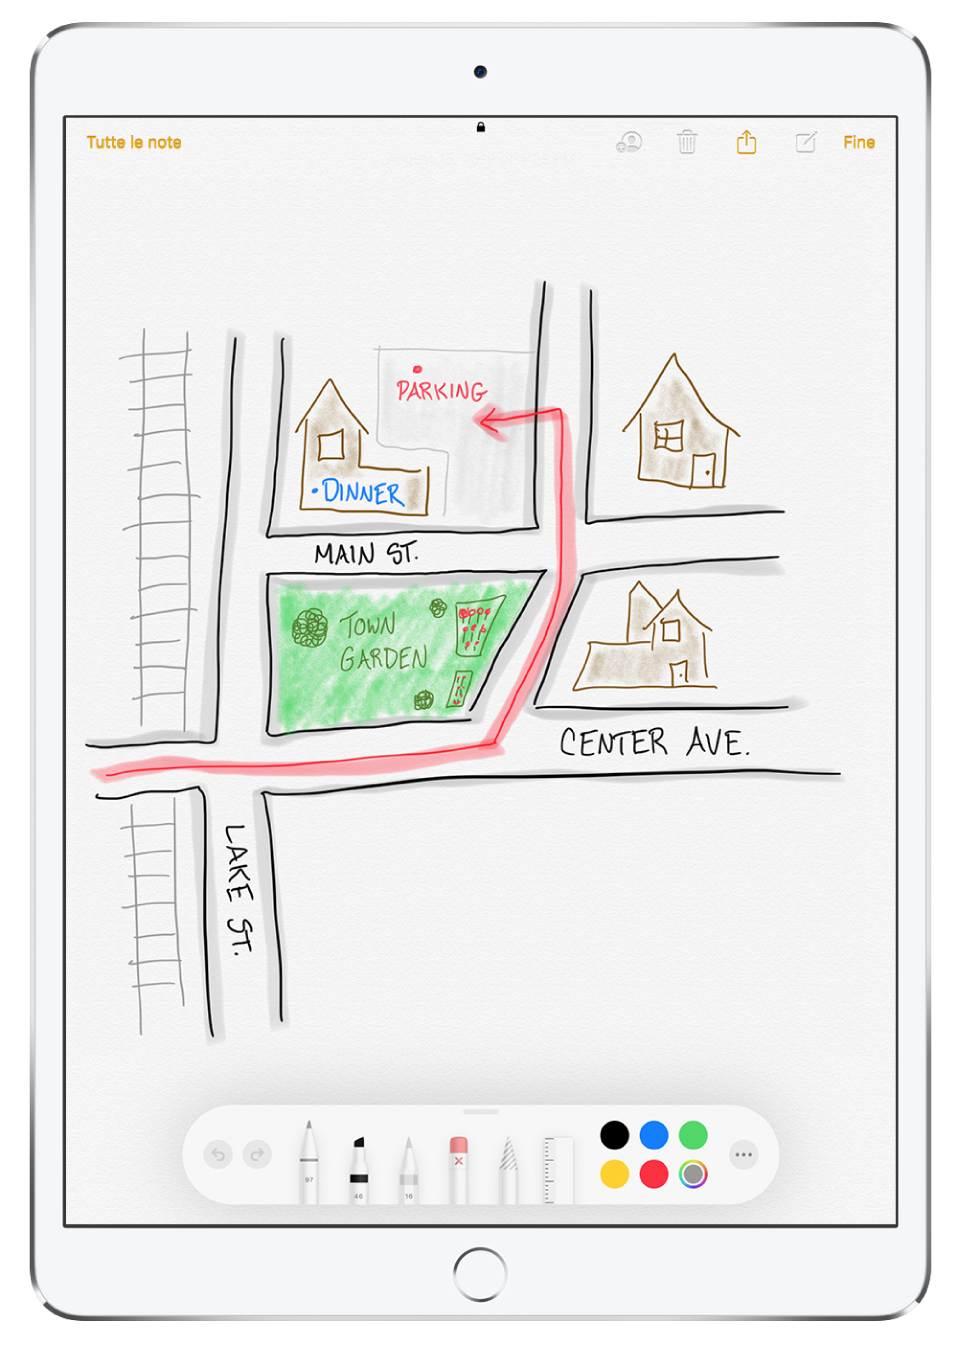 Il disegno di un quartiere all’interno di una nota nell'app Note. Il disegno include strade etichettate e una freccia rossa che indica un parcheggio disponibile. Lungo la parte inferiore dello schermo c’è la barra degli strumenti di modifica, con un utensile di scrittura e un colore personalizzato selezionato.